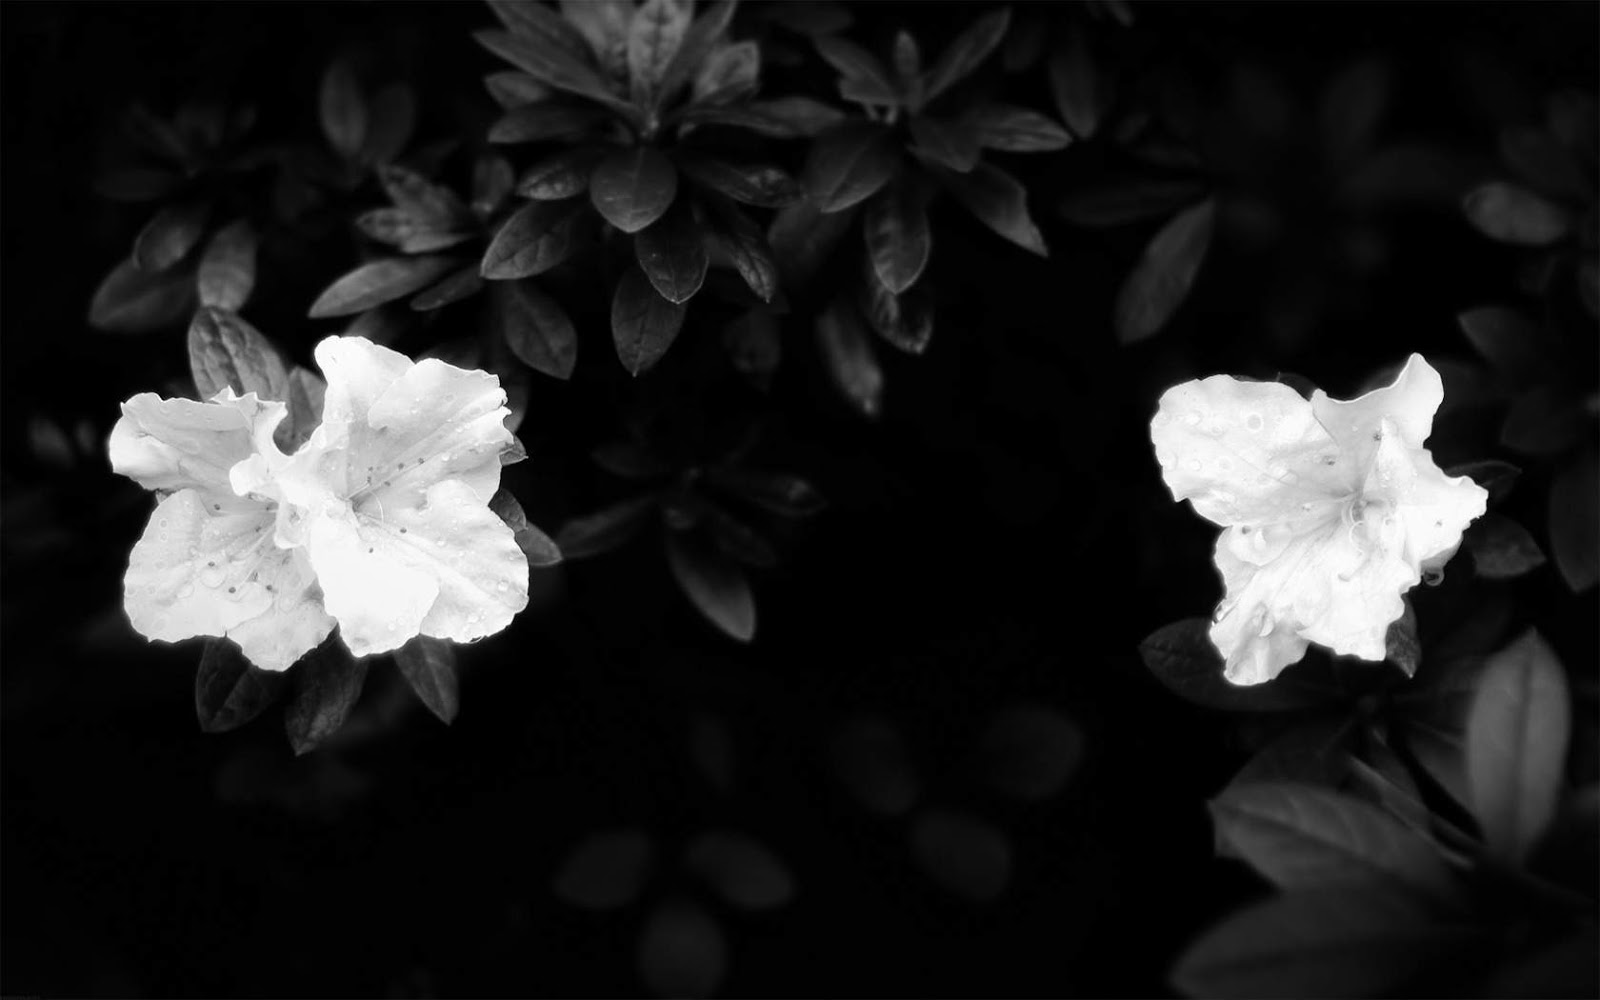 schwarz weiß blumentapete,weiß,schwarz,monochrome fotografie,schwarz und weiß,blütenblatt